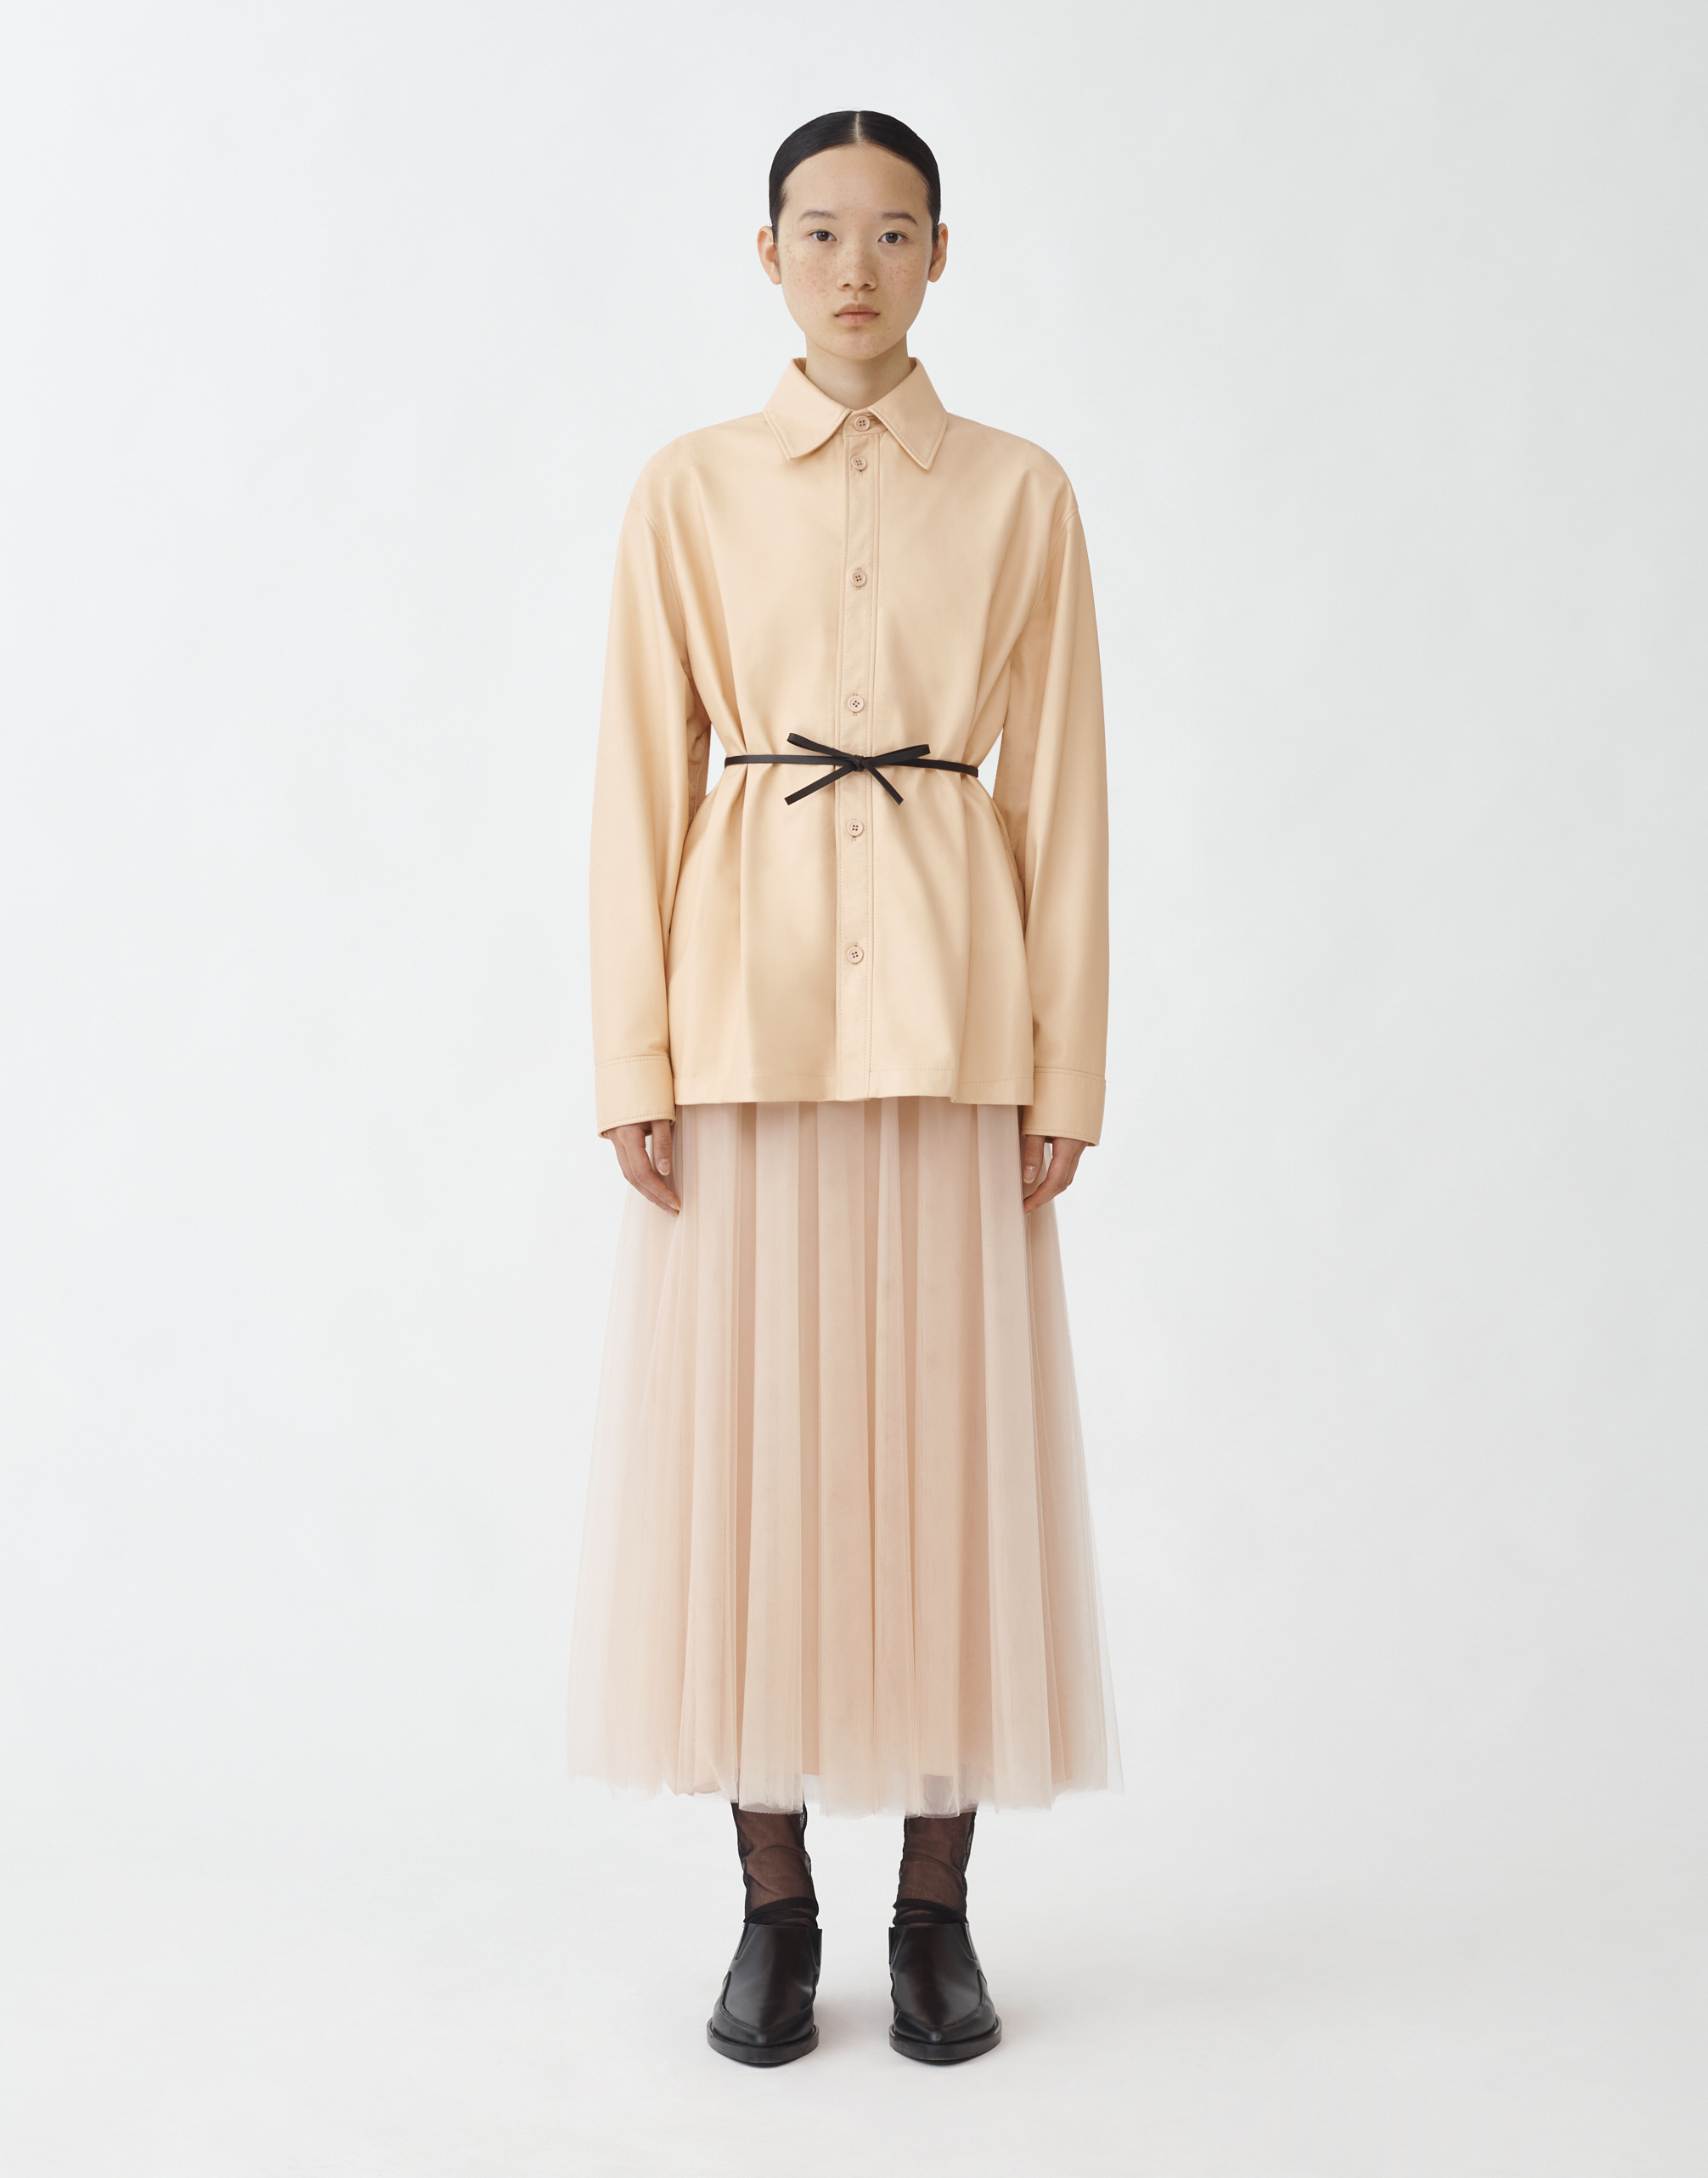 Shop Fabiana Filippi Wide Tulle Skirt In Dusty Pink